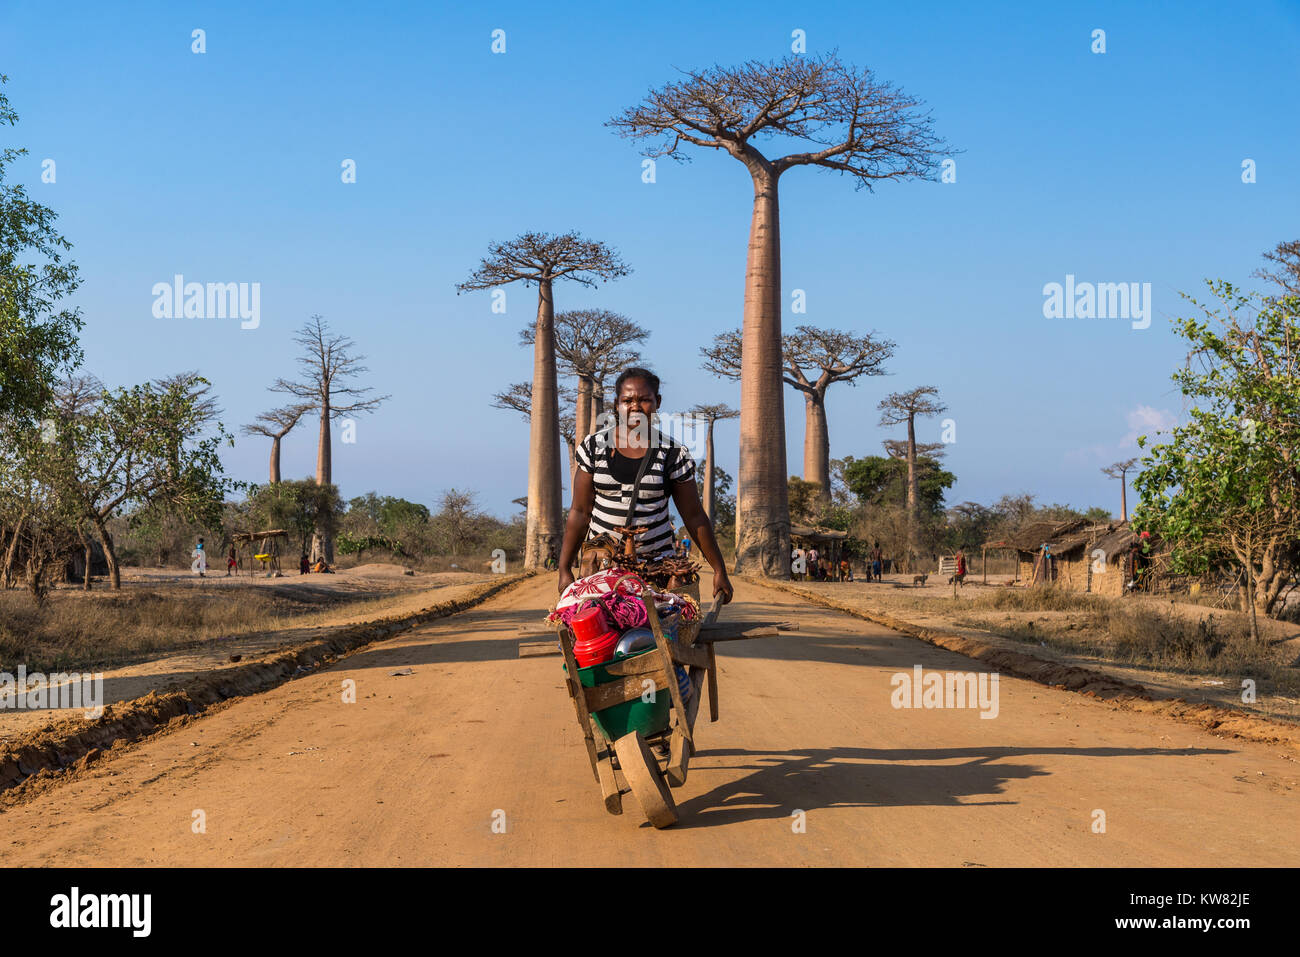 Una mujer malgache empujando una carreta de mano de madera con recuerdos a lo largo de la Avenida de los baobabs. Madagascar, África. Foto de stock